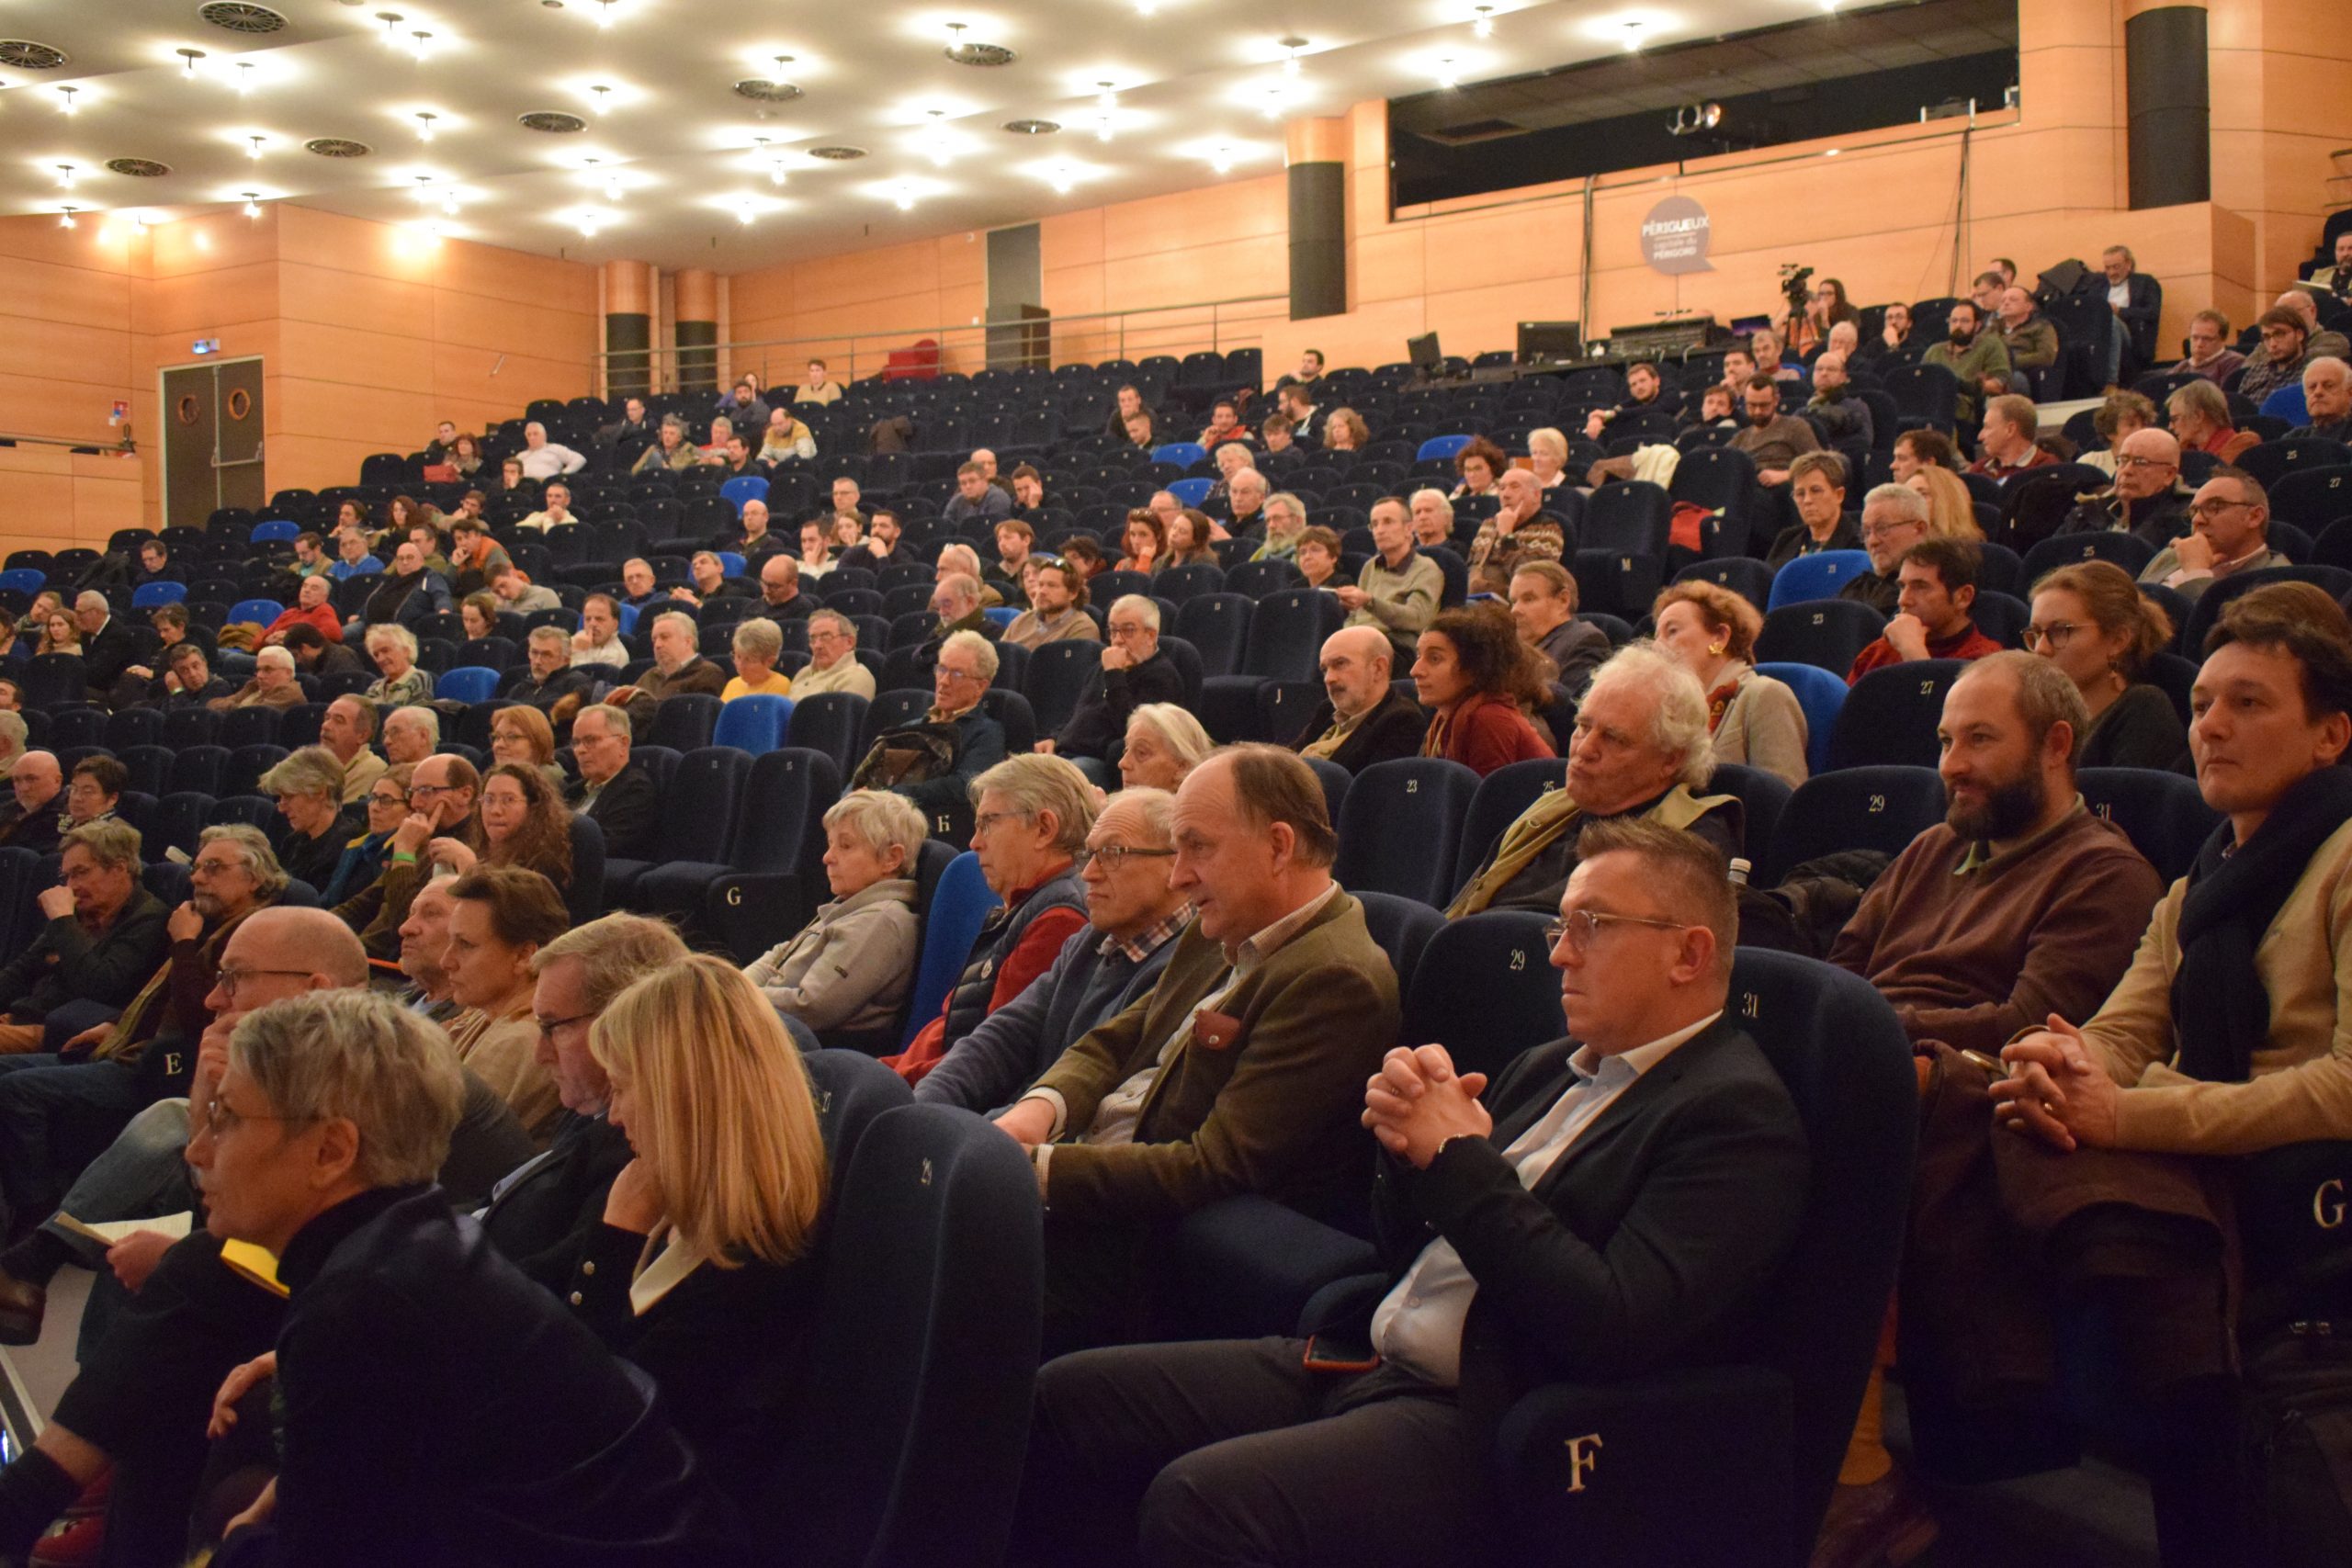 L'amphithéâtre du théâtre de l'Odyssée à Périgueux est resté rempli tout au long de la journée, plus de 600 personnes ayant défilé dans l'assistance au total, preuve de l'intérêt du sujet et des débats pour le grand public.